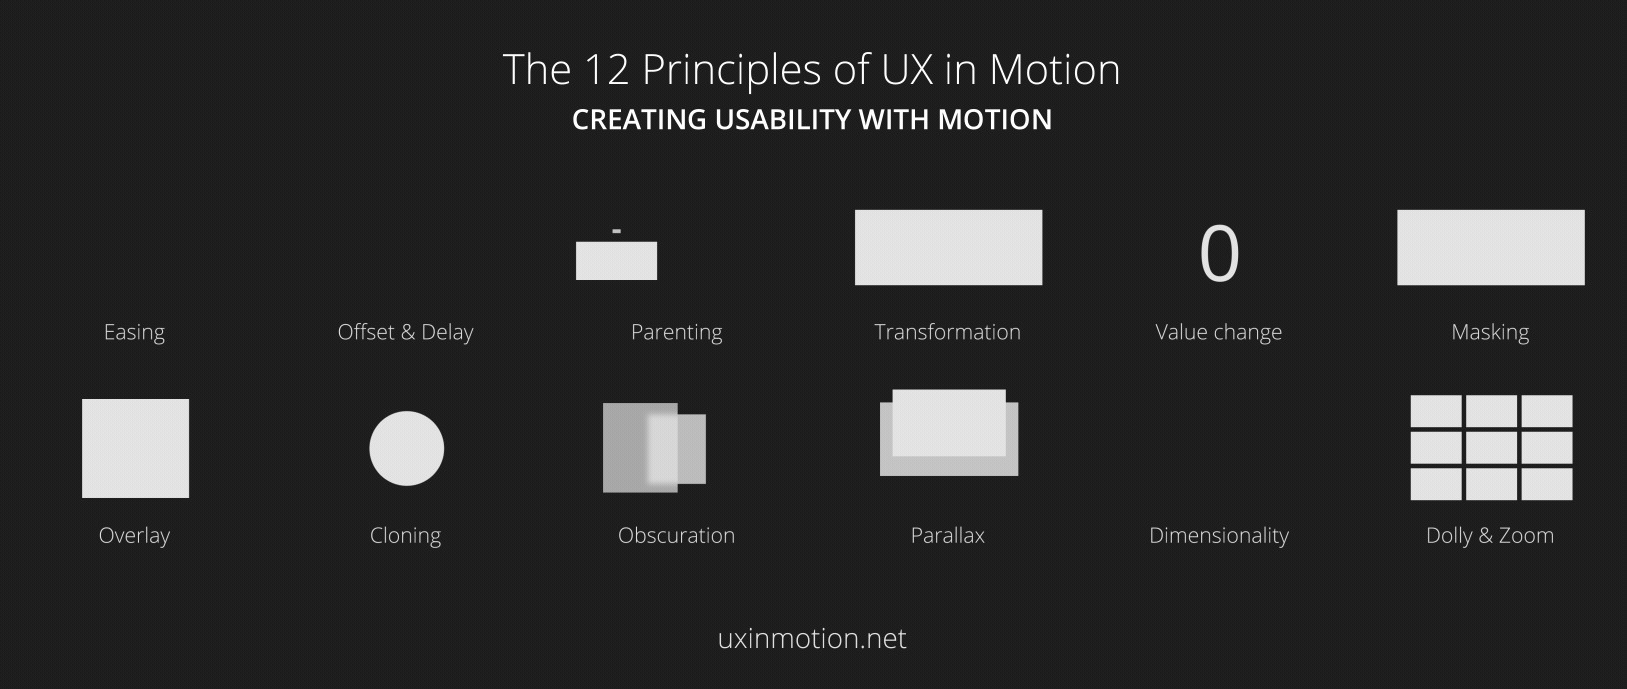 Criando Usabilidade com Motion: O Manifesto do UX em Movimento, by Felippe  Silveira, UX Motion Design